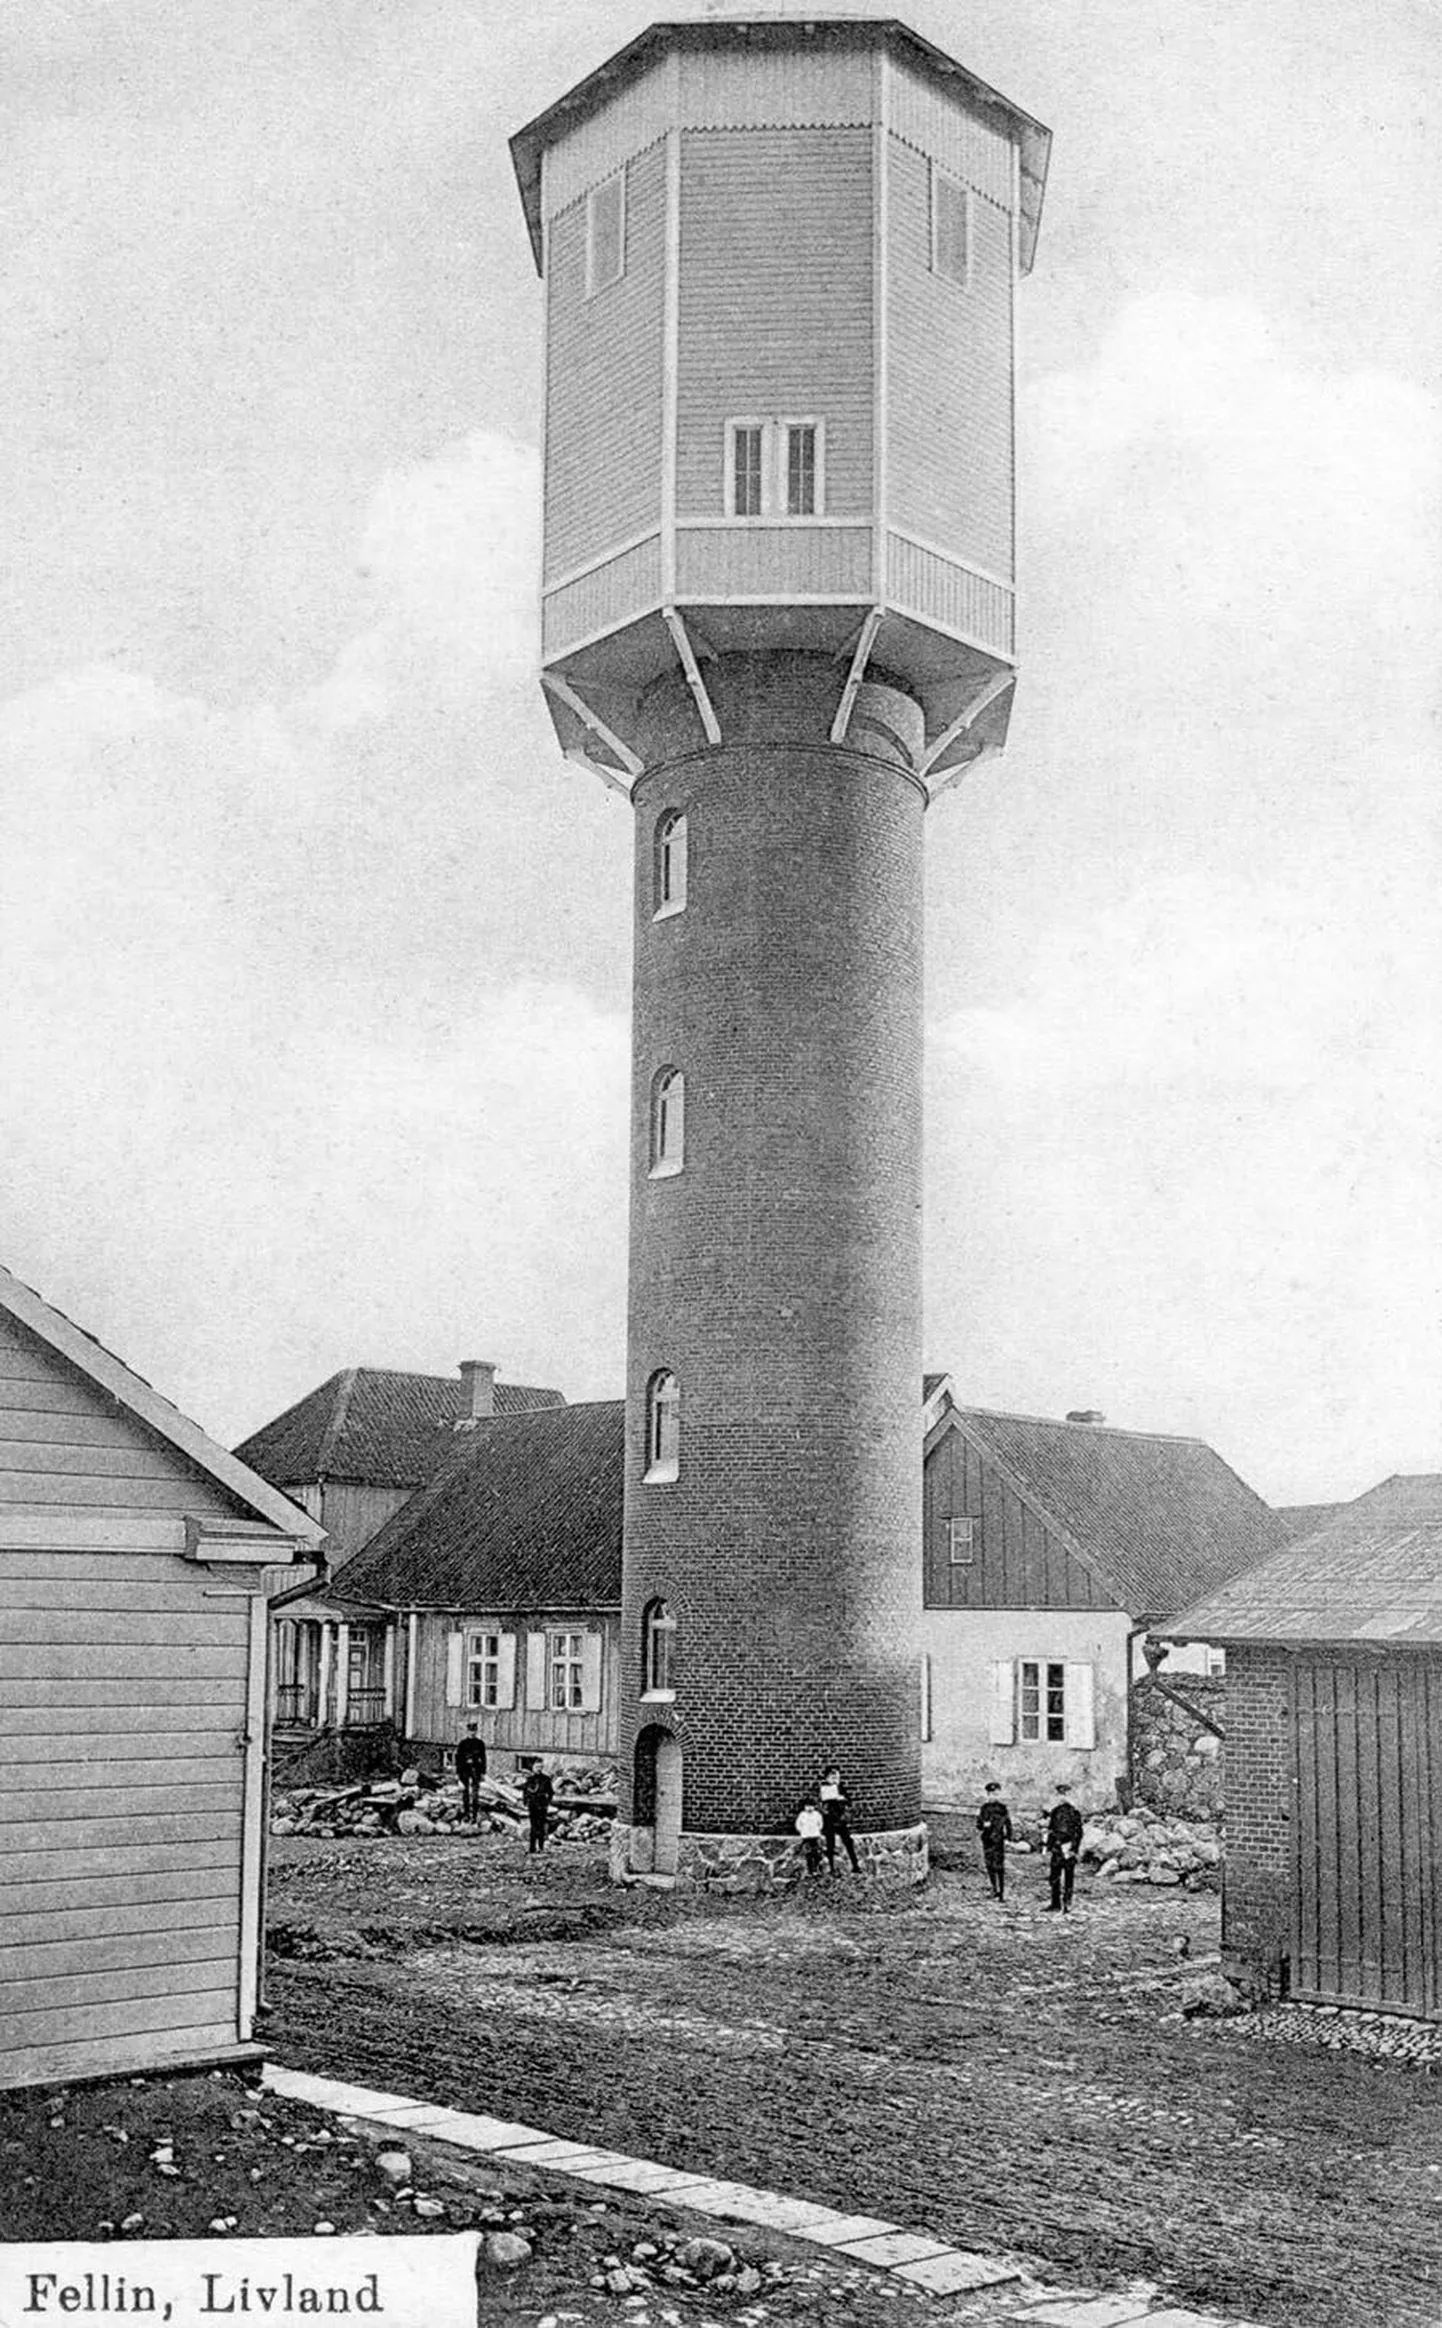 1911. aastal valminud tornikiiver mõjub 1999. aastal valmis saanuga
võrreldes saledamana, sest selle ülemises osas polnud aknaid.